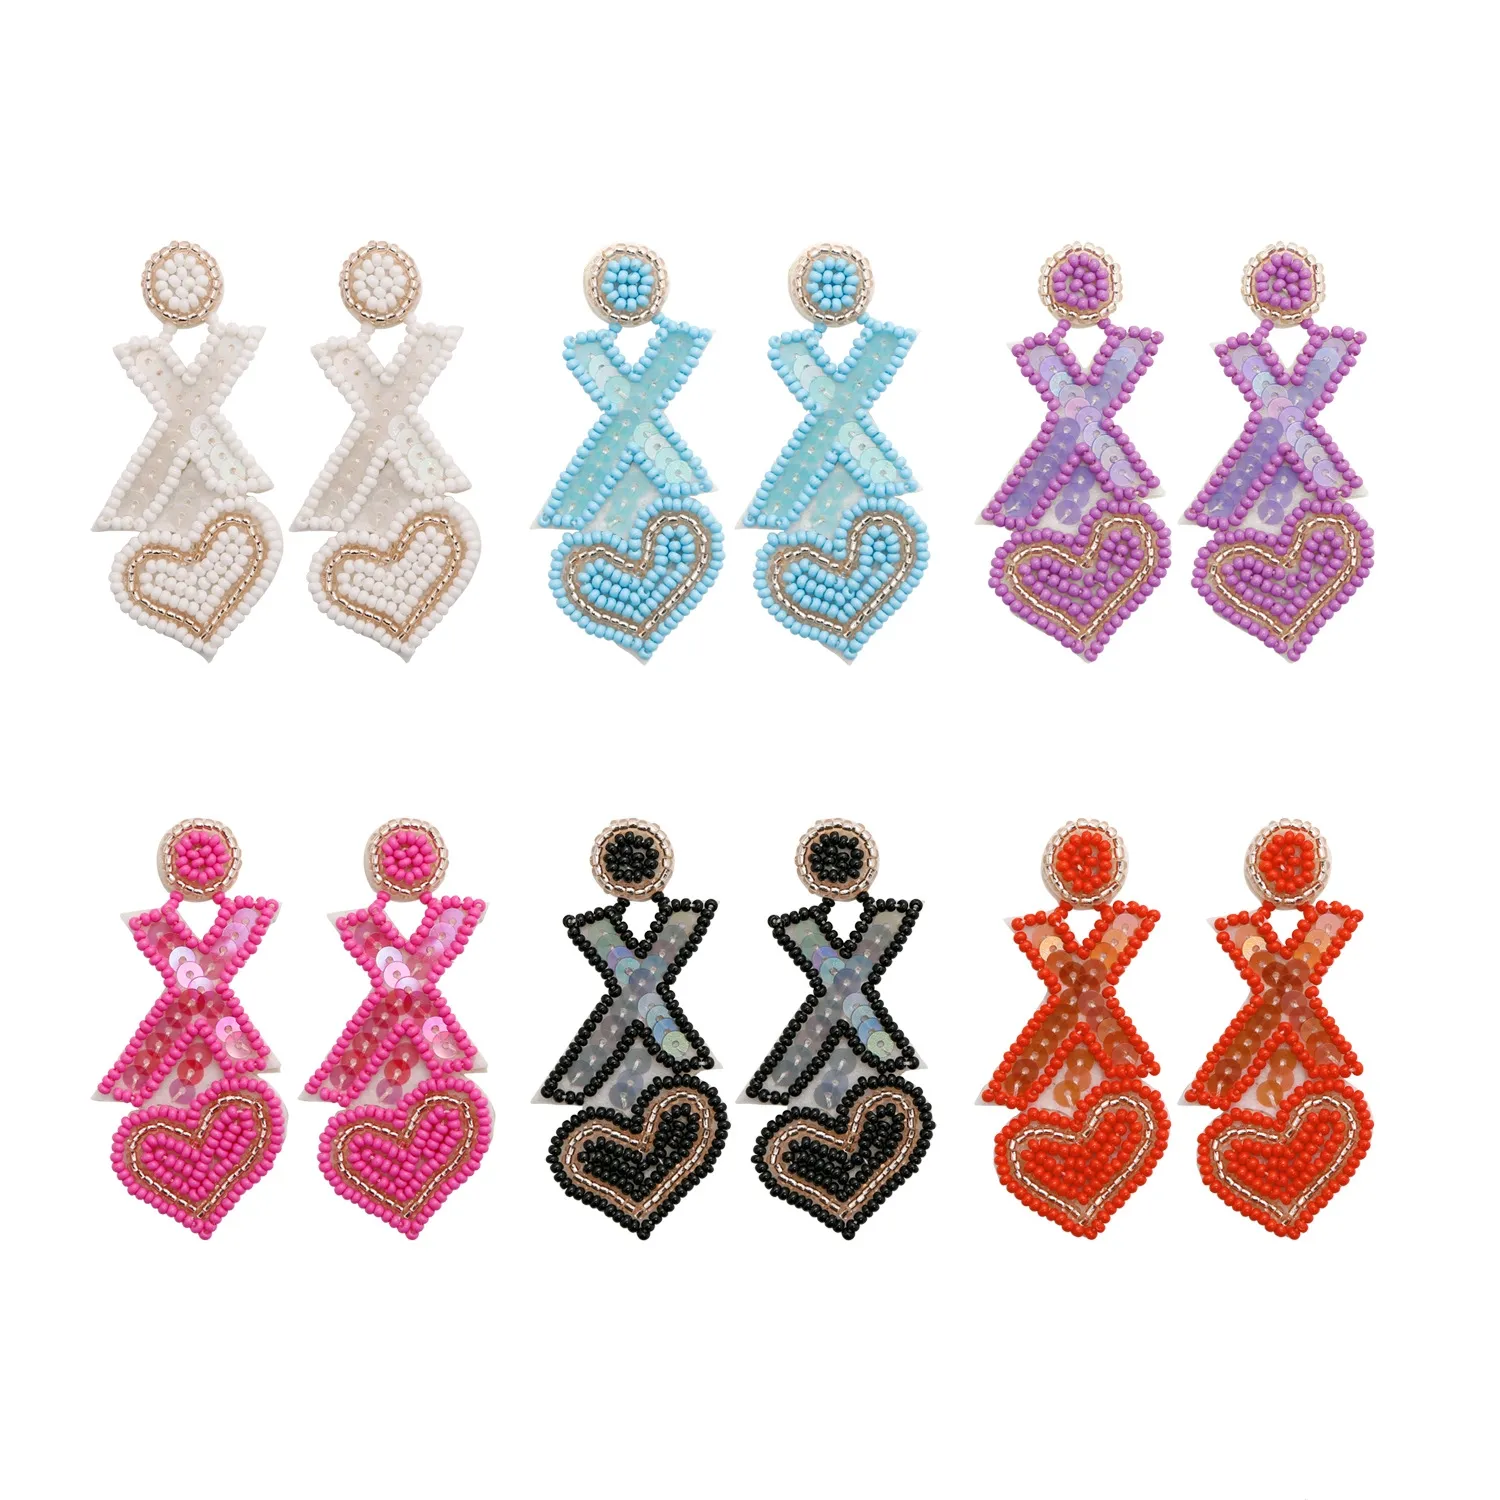 Hanpai Vintage Women Ethnic Jewelry Earrings Letter XOXO Rice Bead Earrings Handmade Heart Stud Earrings